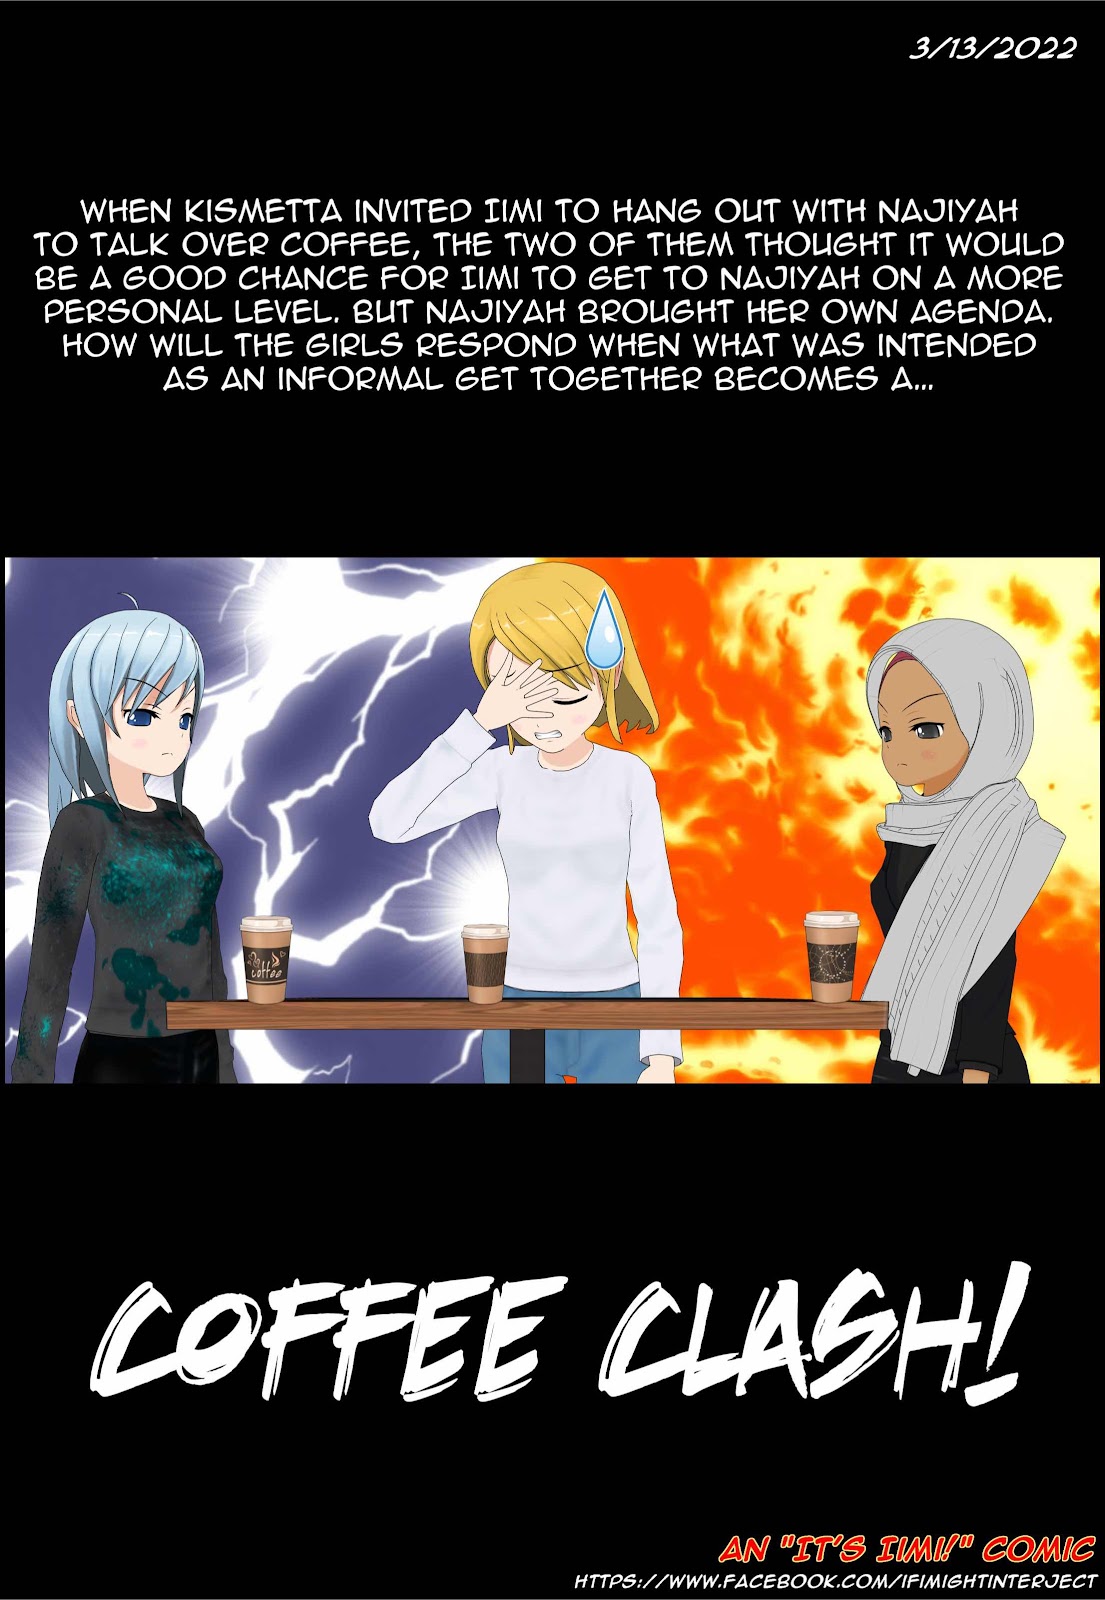 It’s Iimi! Coffee Clash!